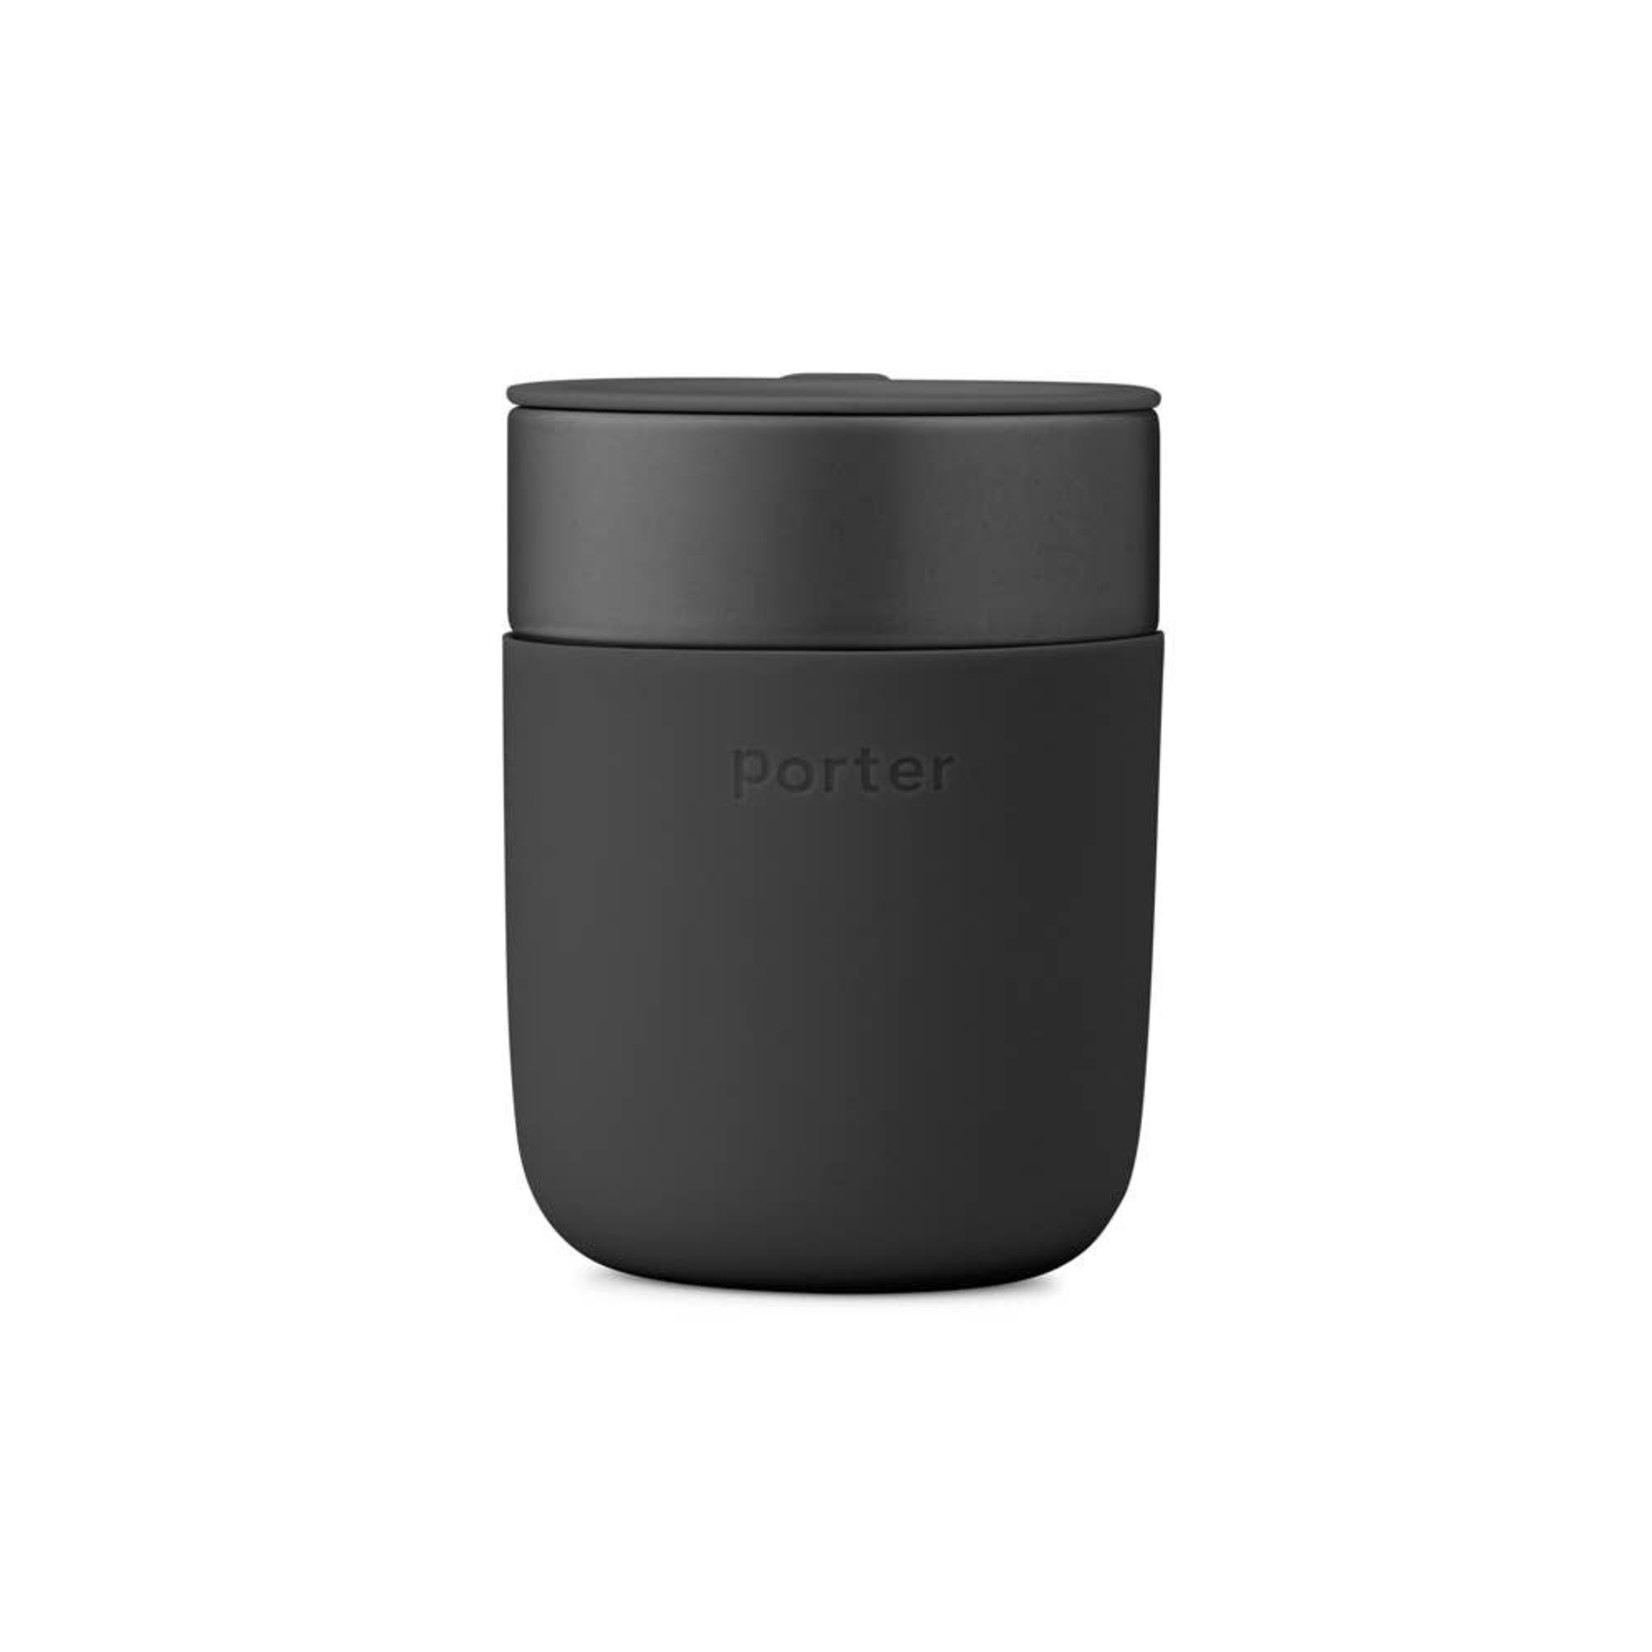 W&P Porter Ceramic Mug 12oz Charcoal